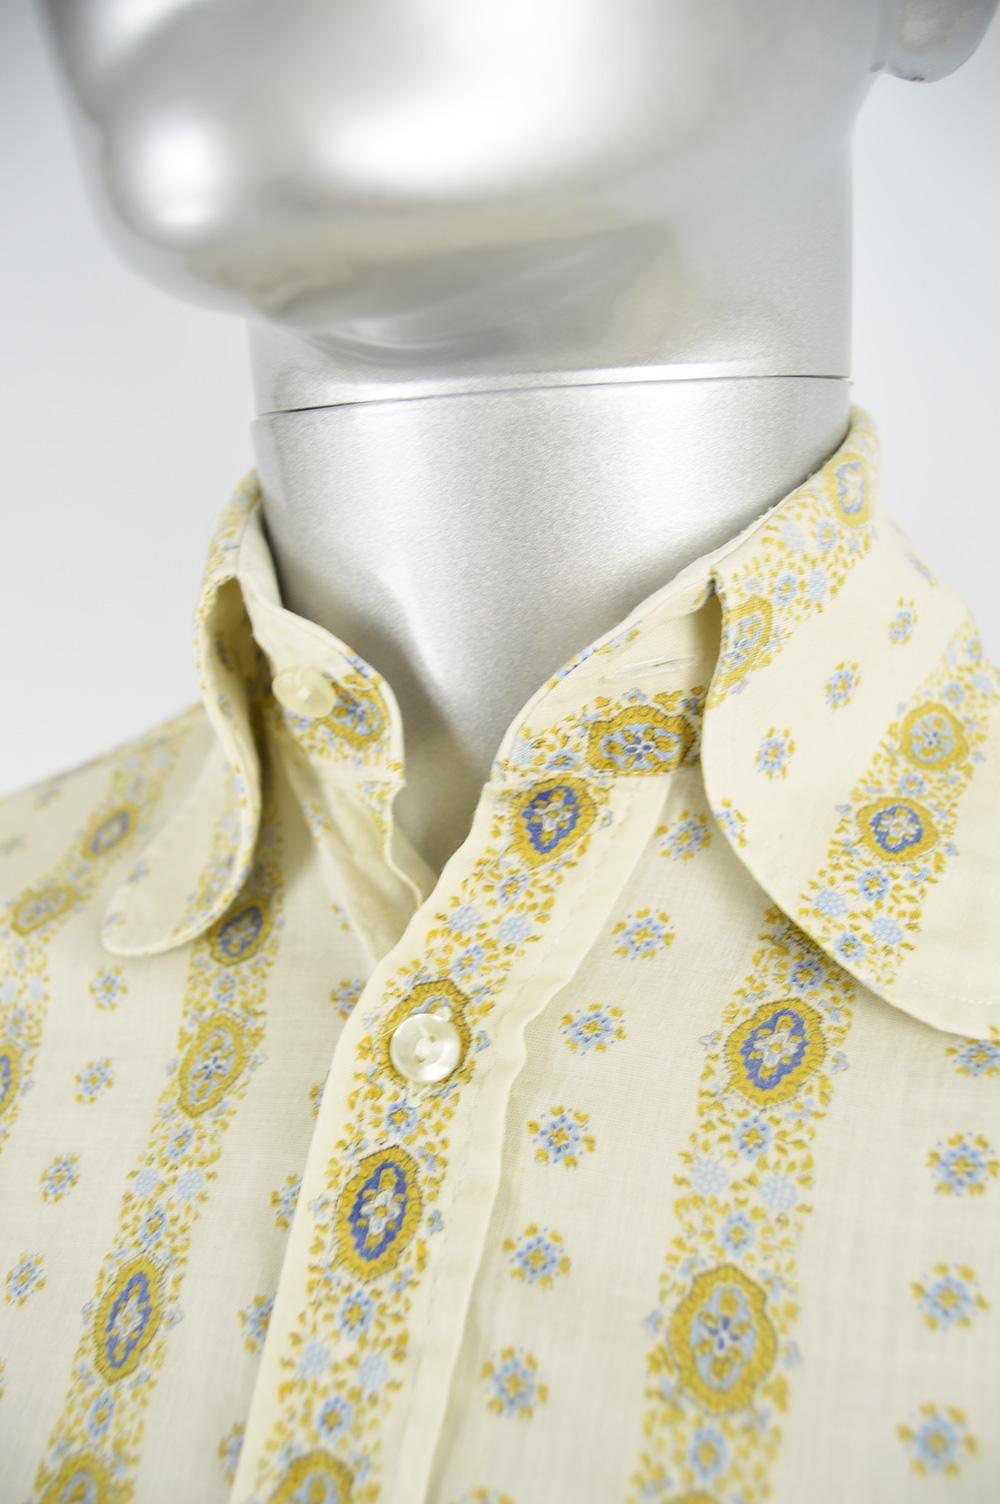 1960s button up shirt